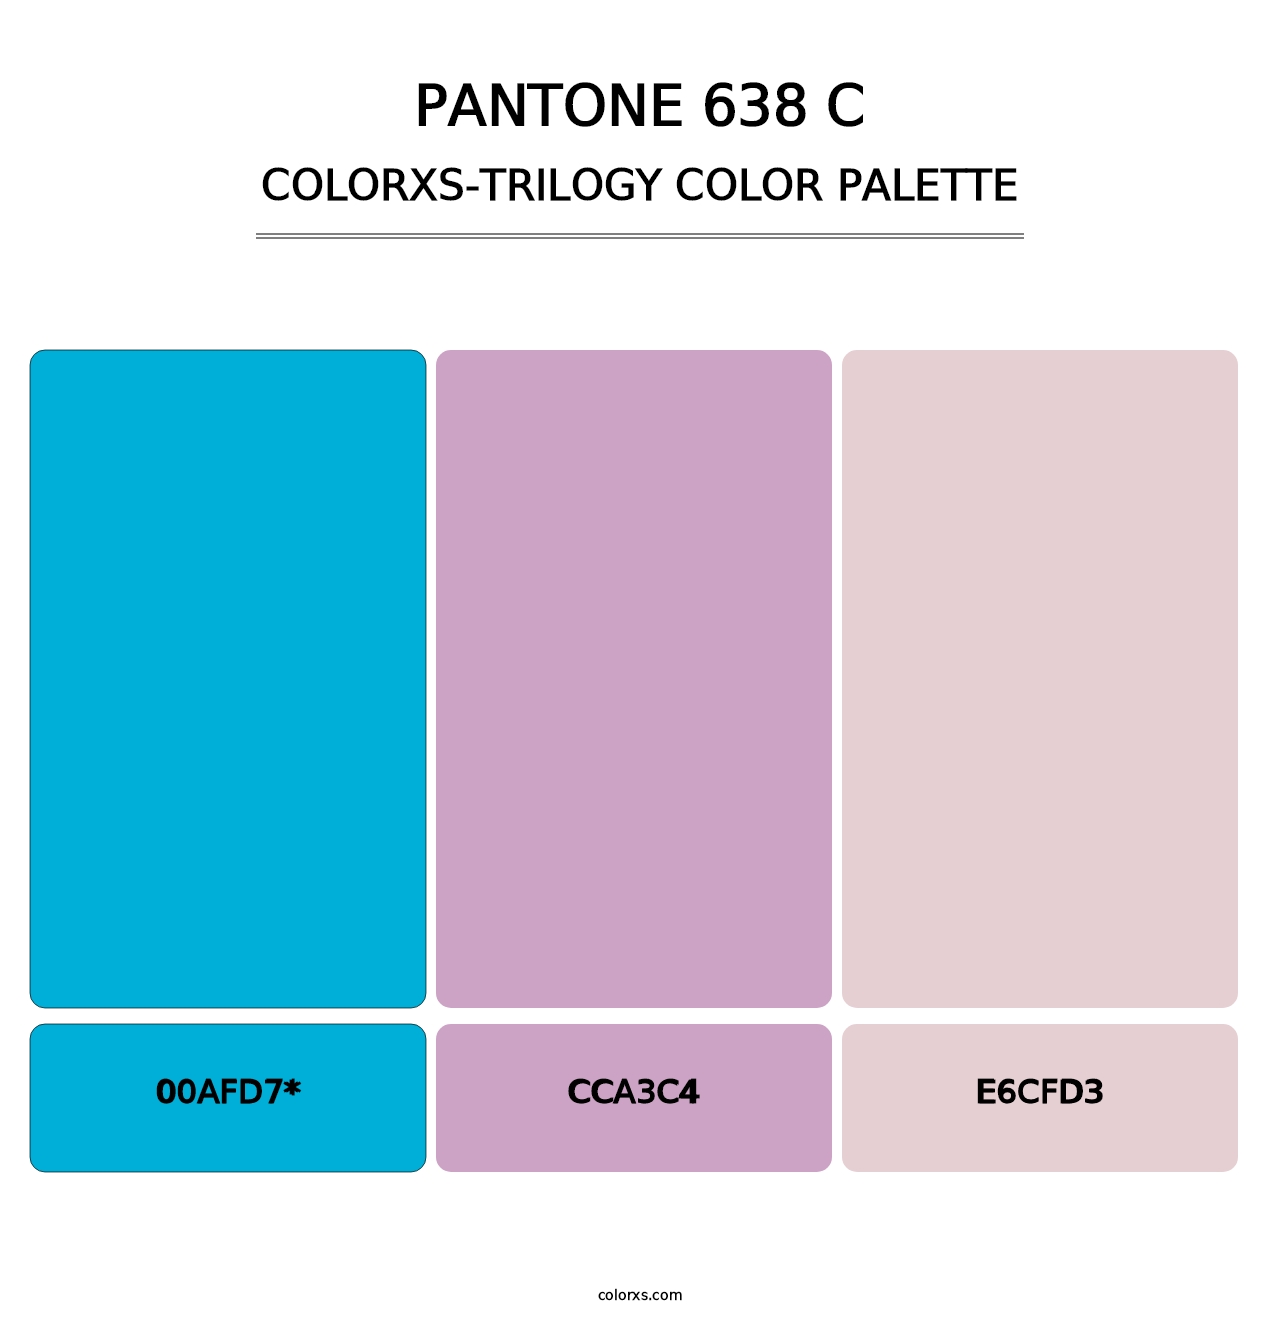 PANTONE 638 C - Colorxs Trilogy Palette